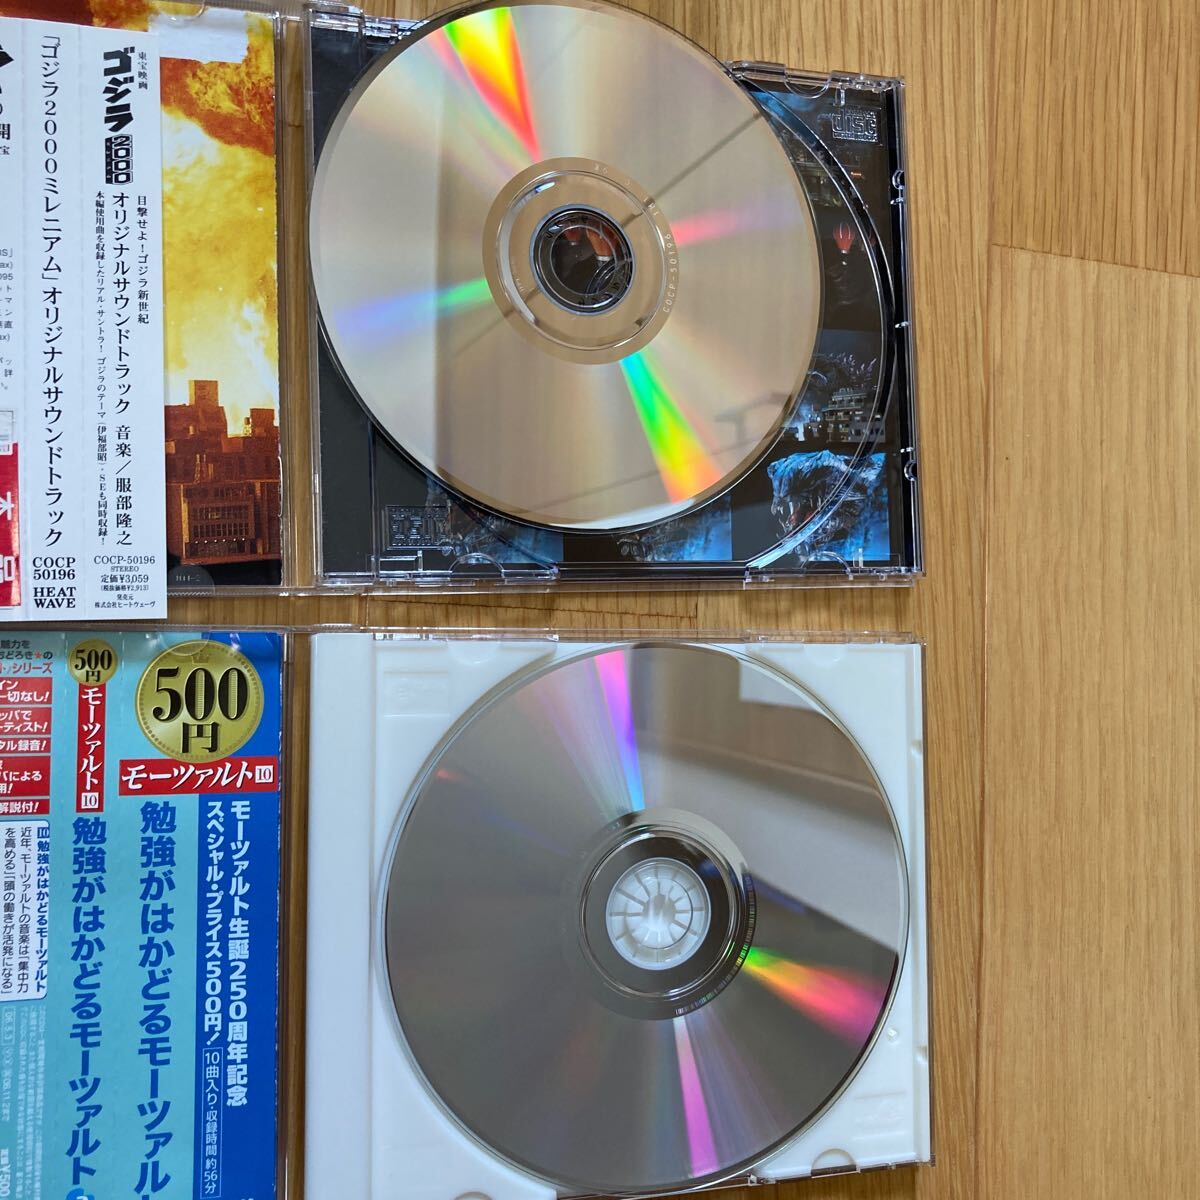 CD 2 листов Classic GODZILLA 2000mo-tsaruto Godzilla millenium спецэффекты Gamera King Giddra Mothra ba - 